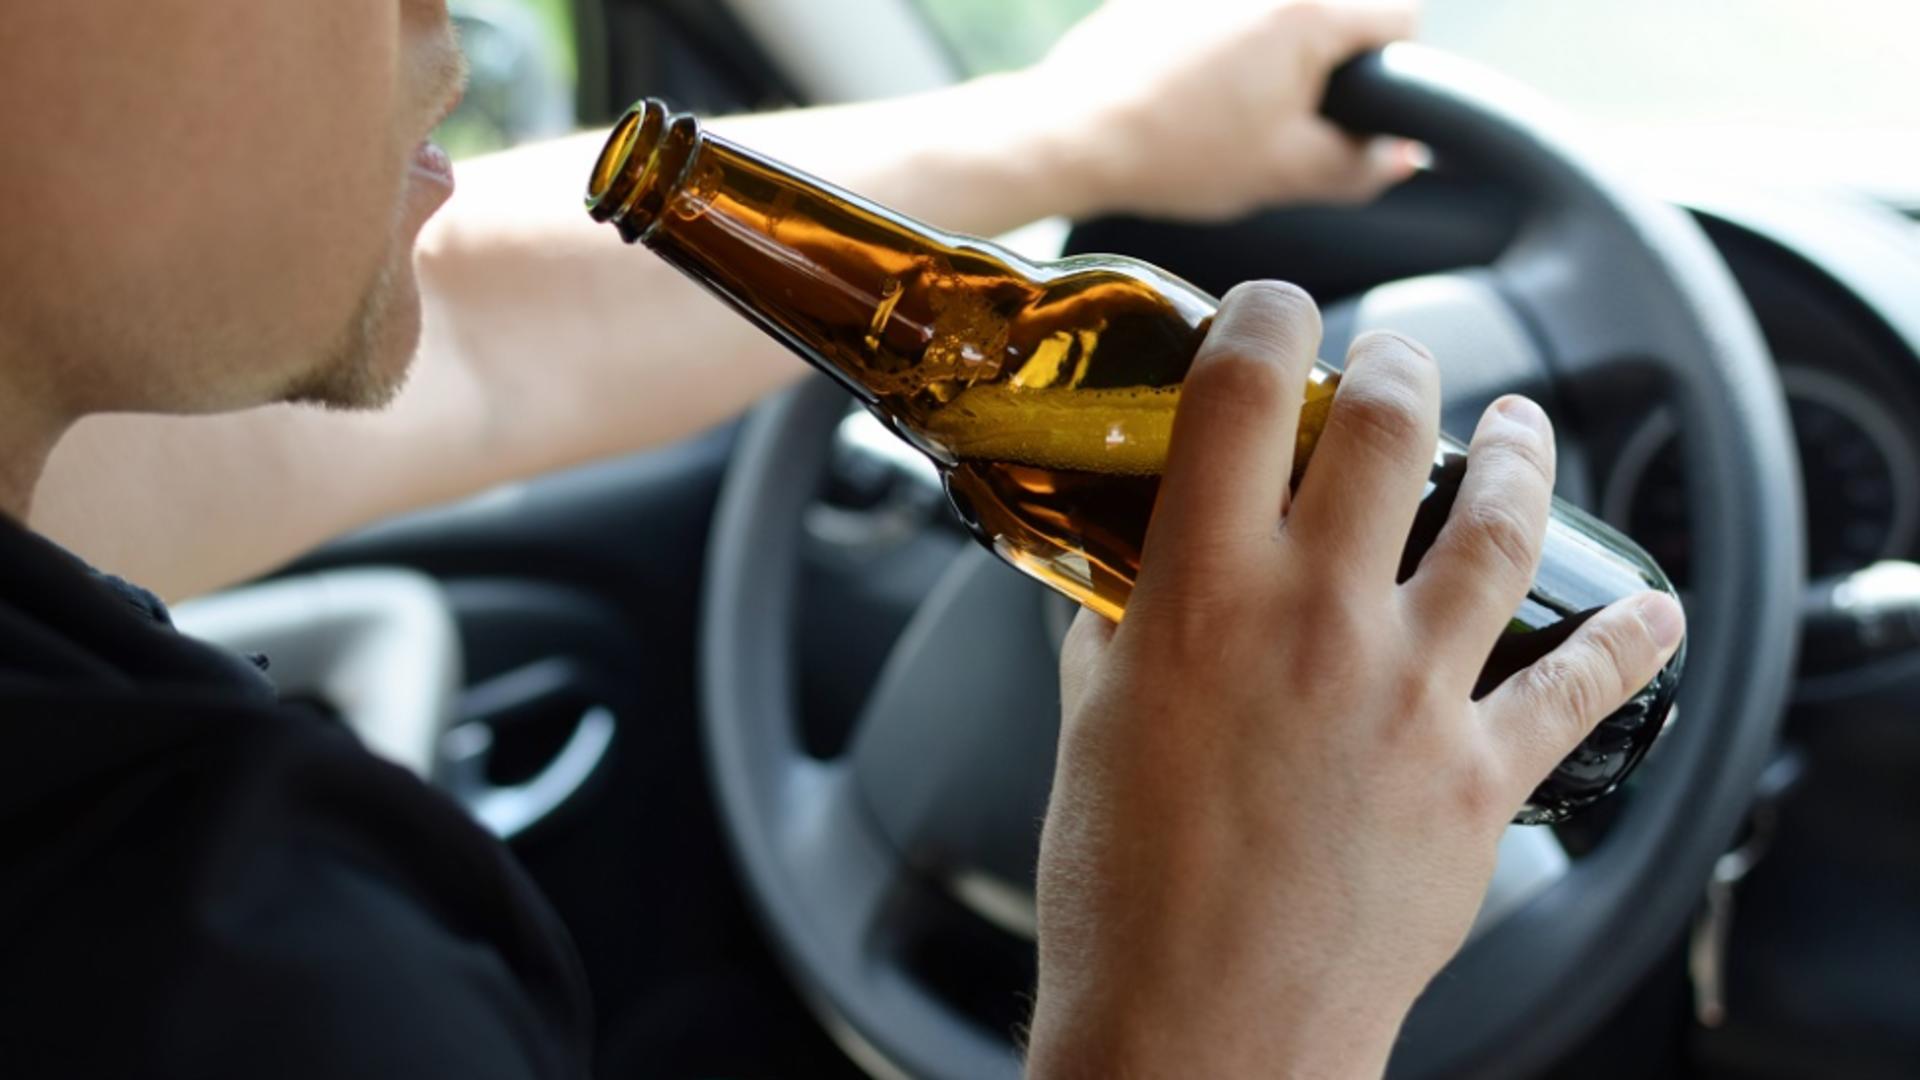 Modificare importantă pentru șoferii prinși drogați și beți. Cât timp ar putea rămâne fără permis